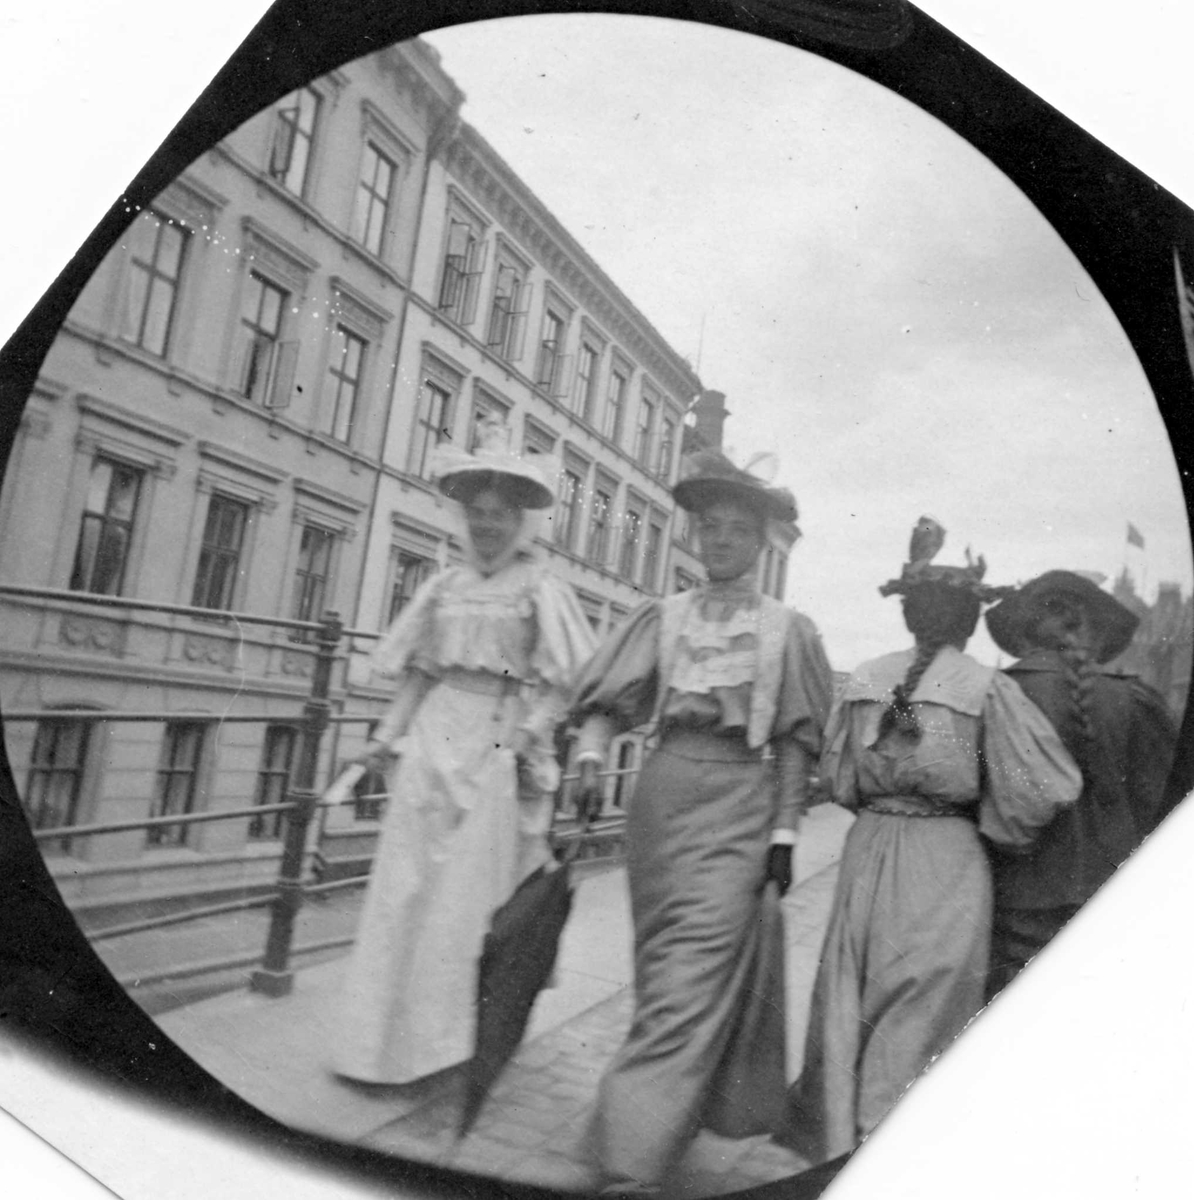 Frk.Bjelke og frk. Hvoslef spaserer langs gjerde i bygate, Oslo. To damer med ryggen til og bygårder.